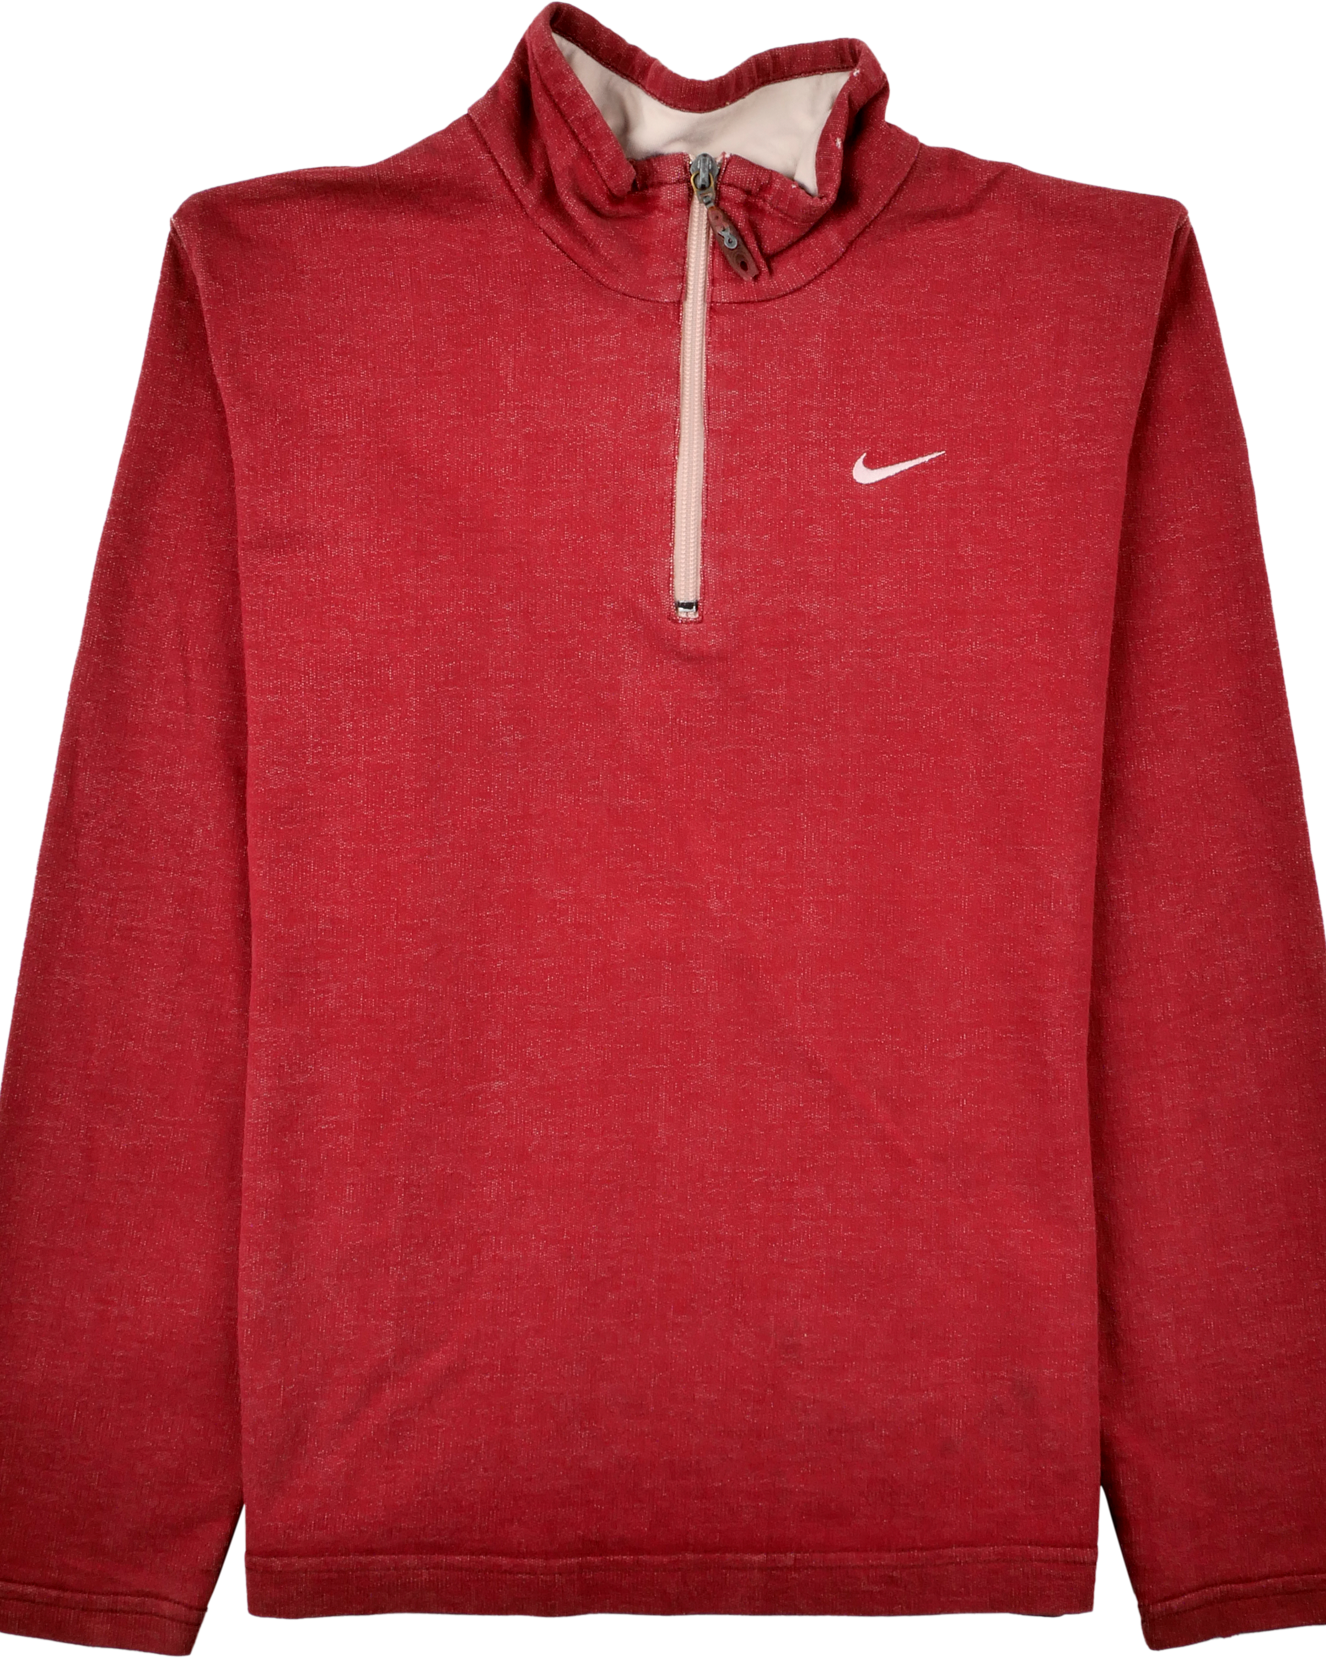 Nike Langarm Hemd rot